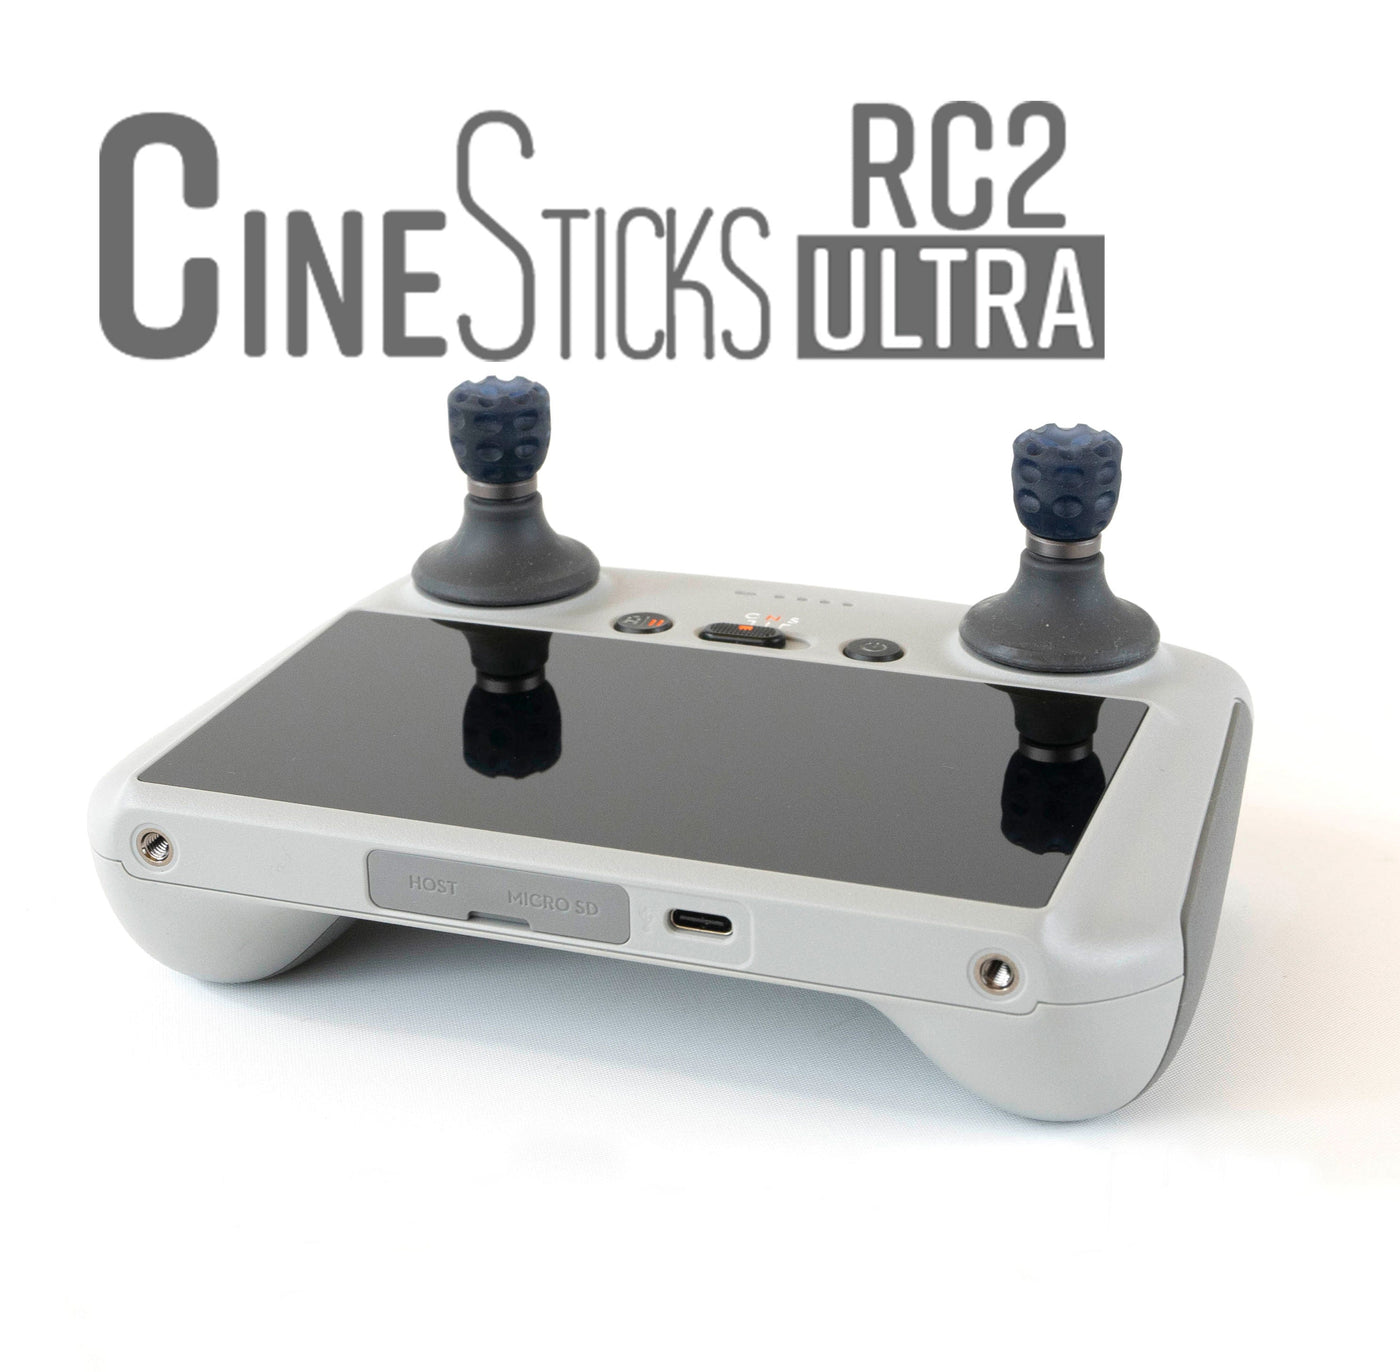 CineSticks RC2 Ultra - Regno Unito